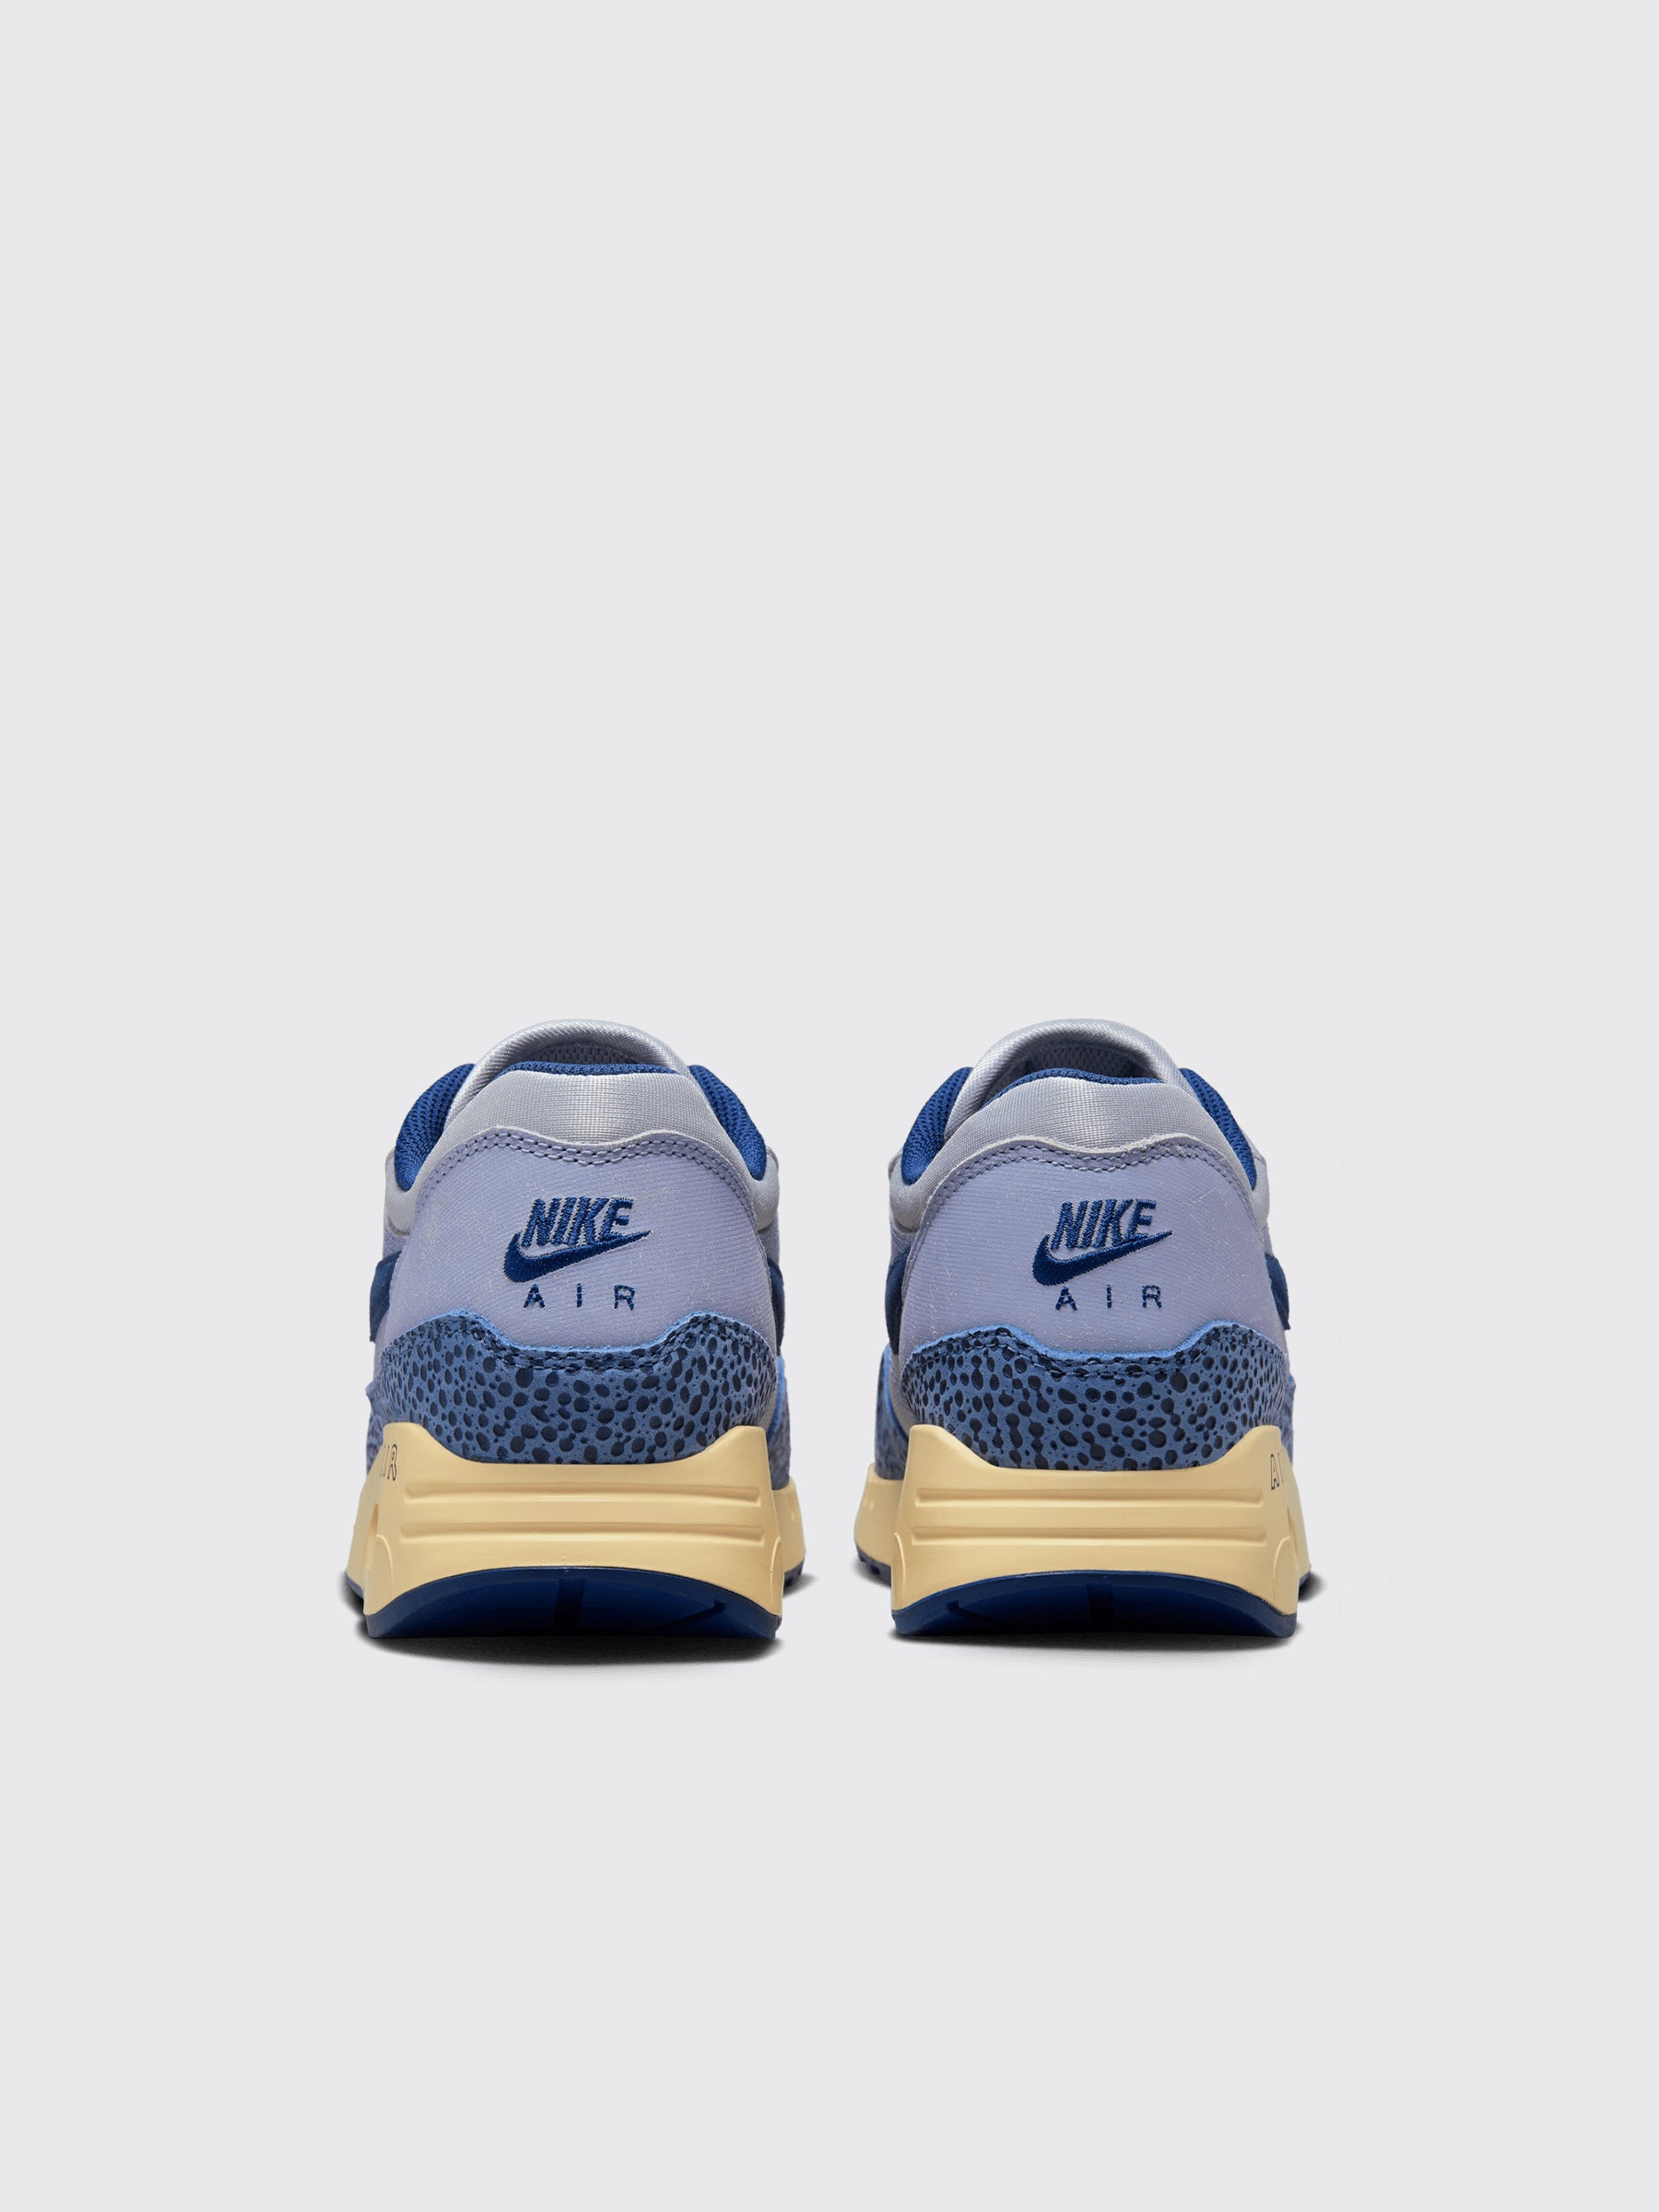 Nike Air Max 1 ‘86 Premium LT Smoke Grey / Diffused Blue